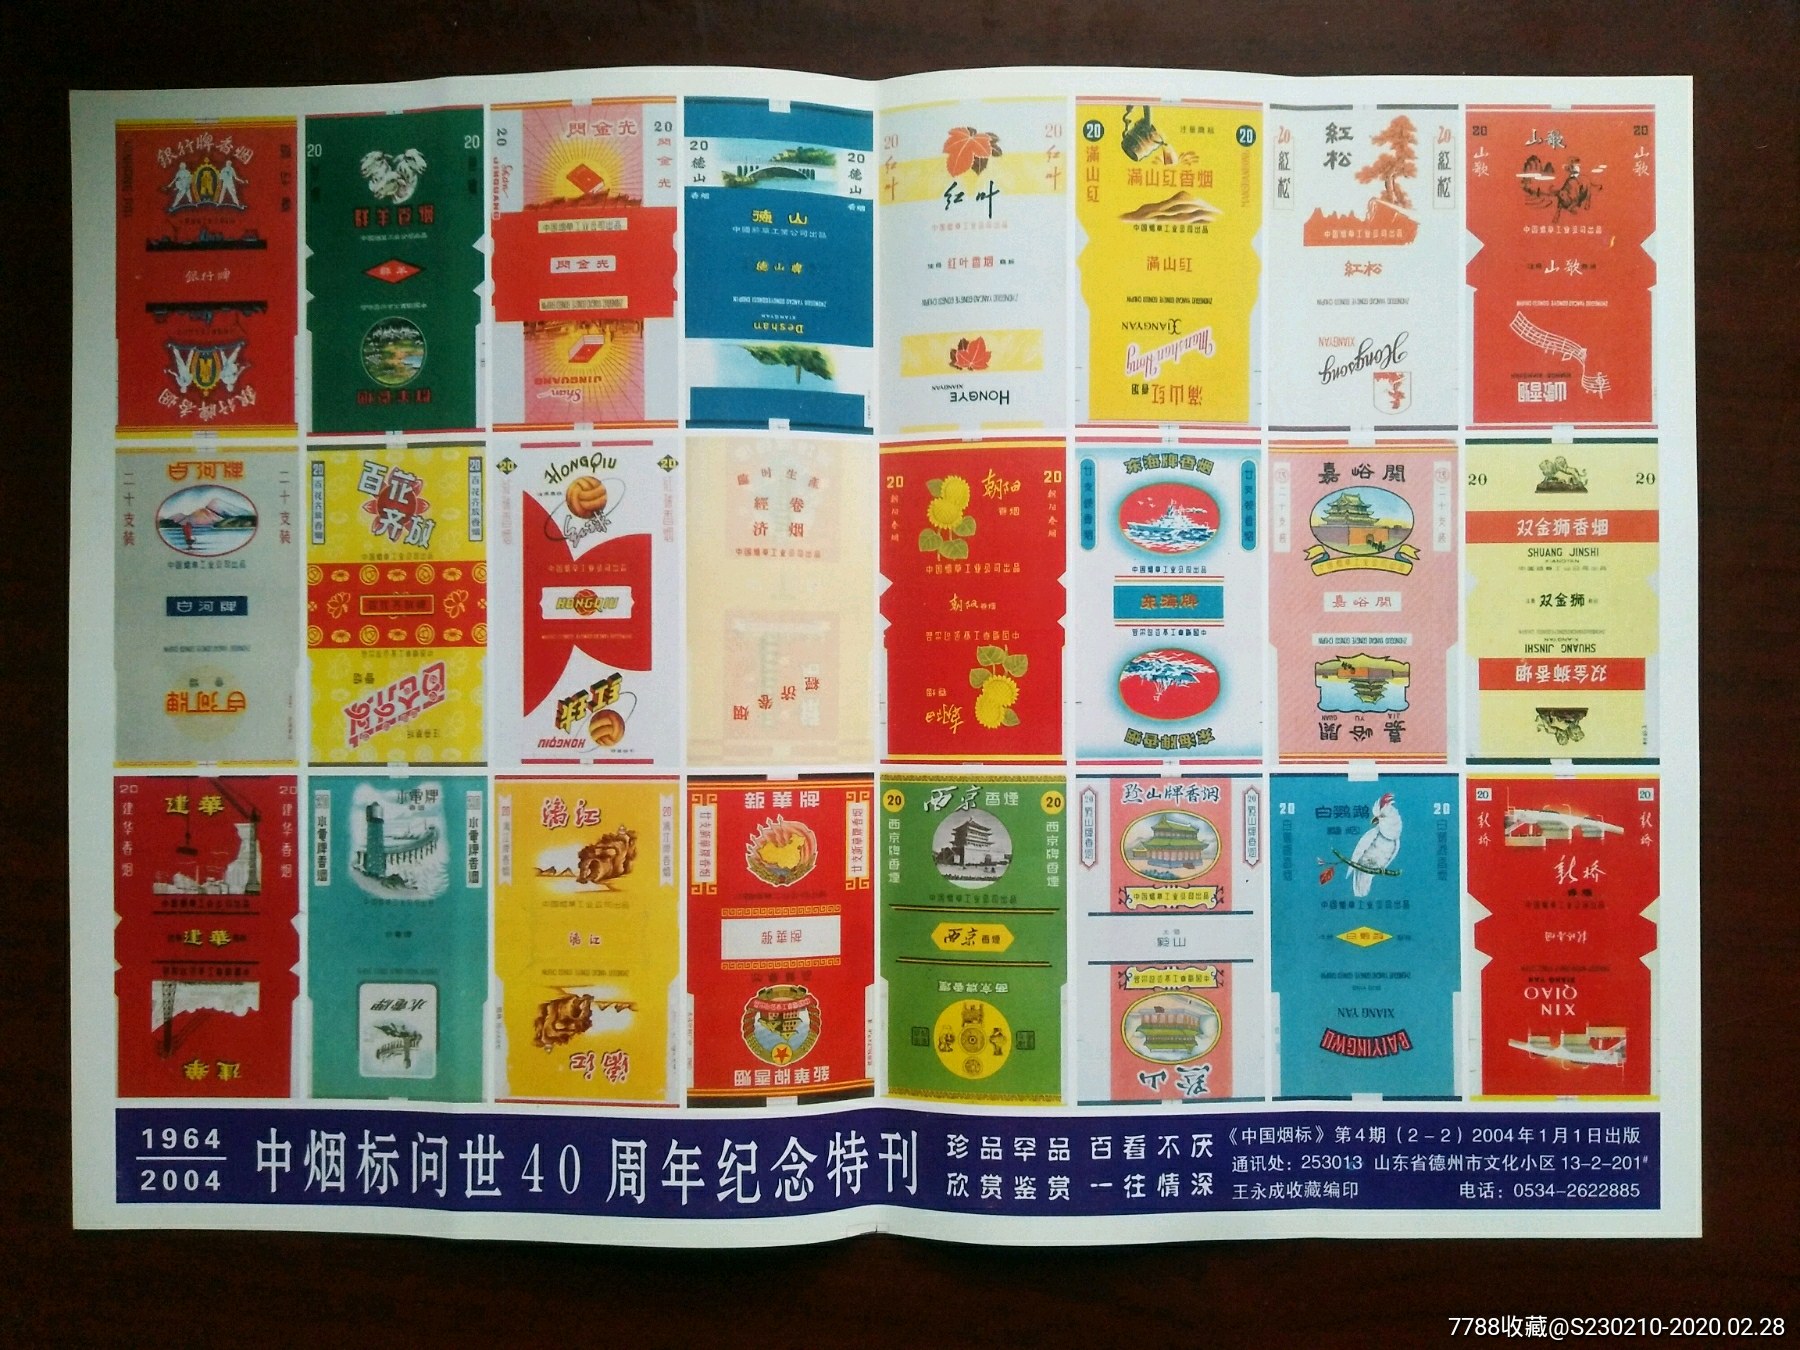 《中国烟标》(第四期)2003年(烟标大王王永成)收藏编印